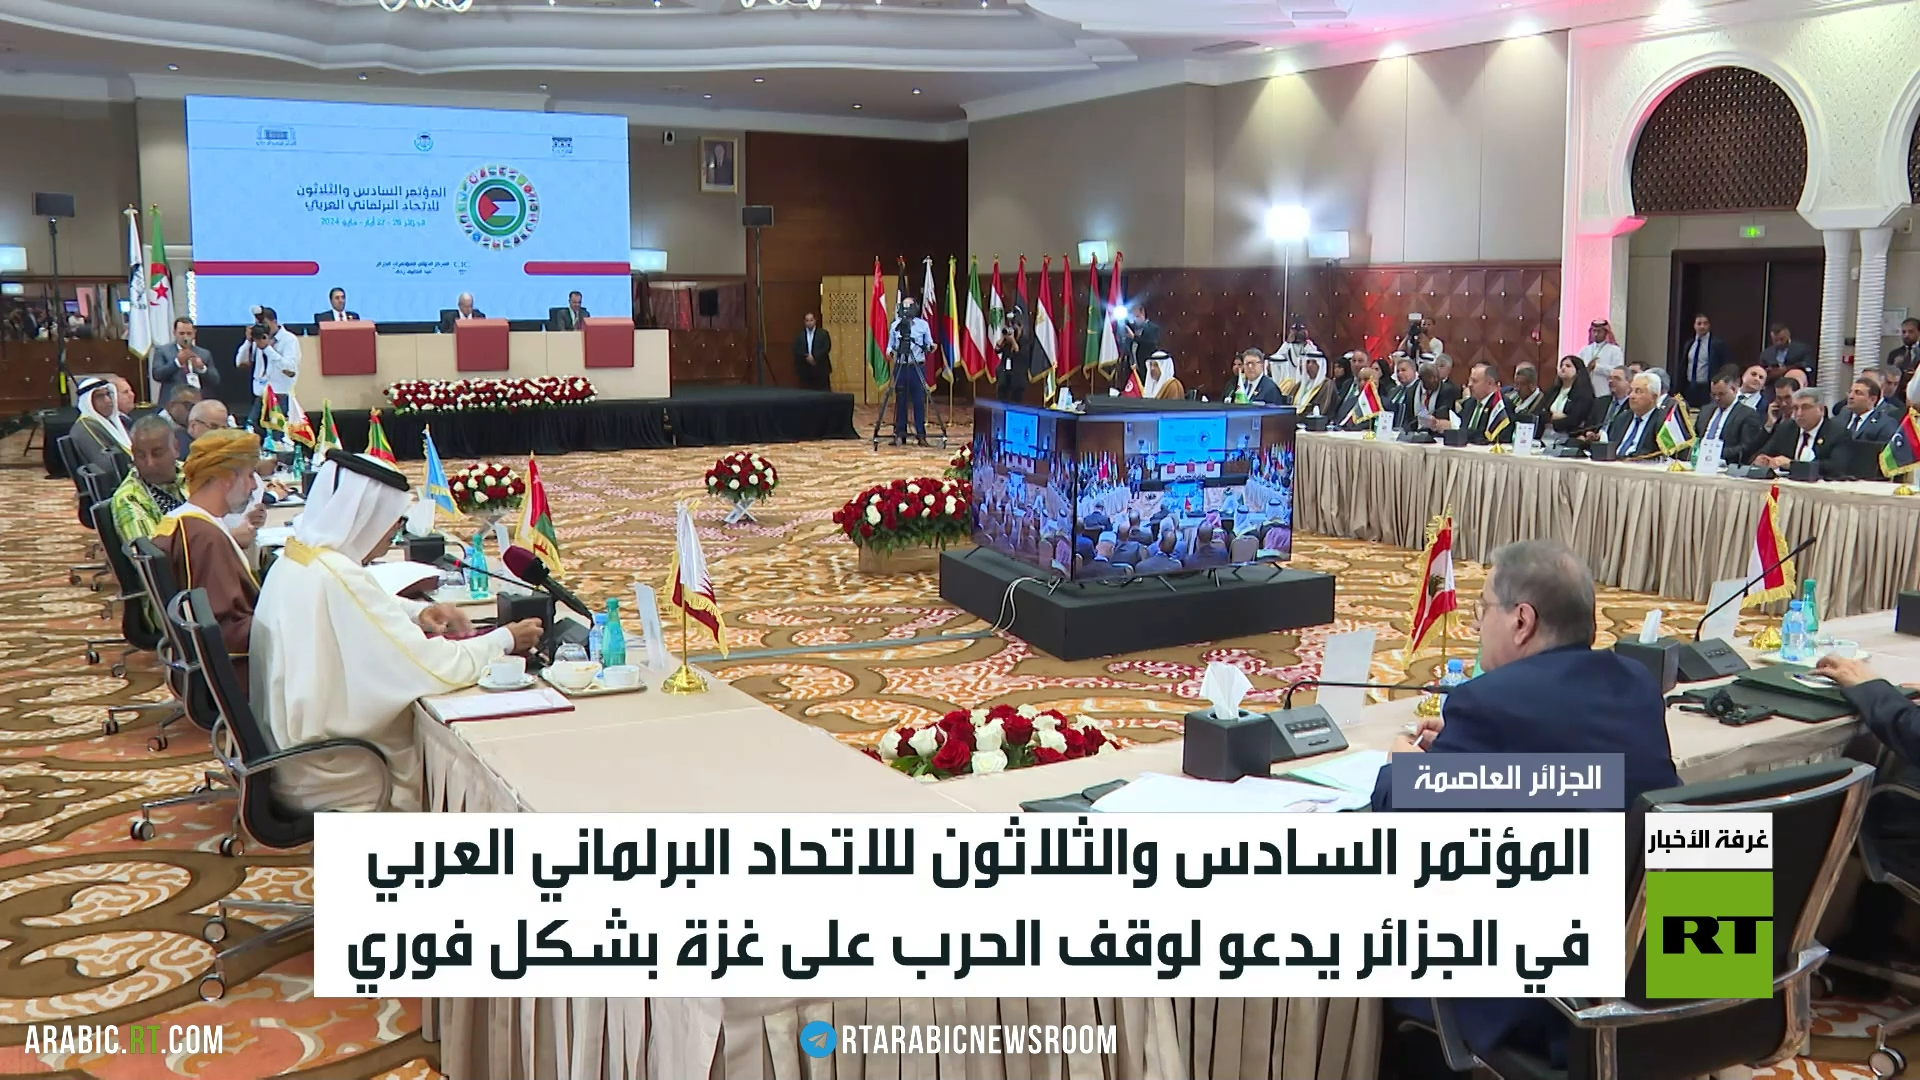 البرلمان العربي يدعو لوقف حرب غزة فورا